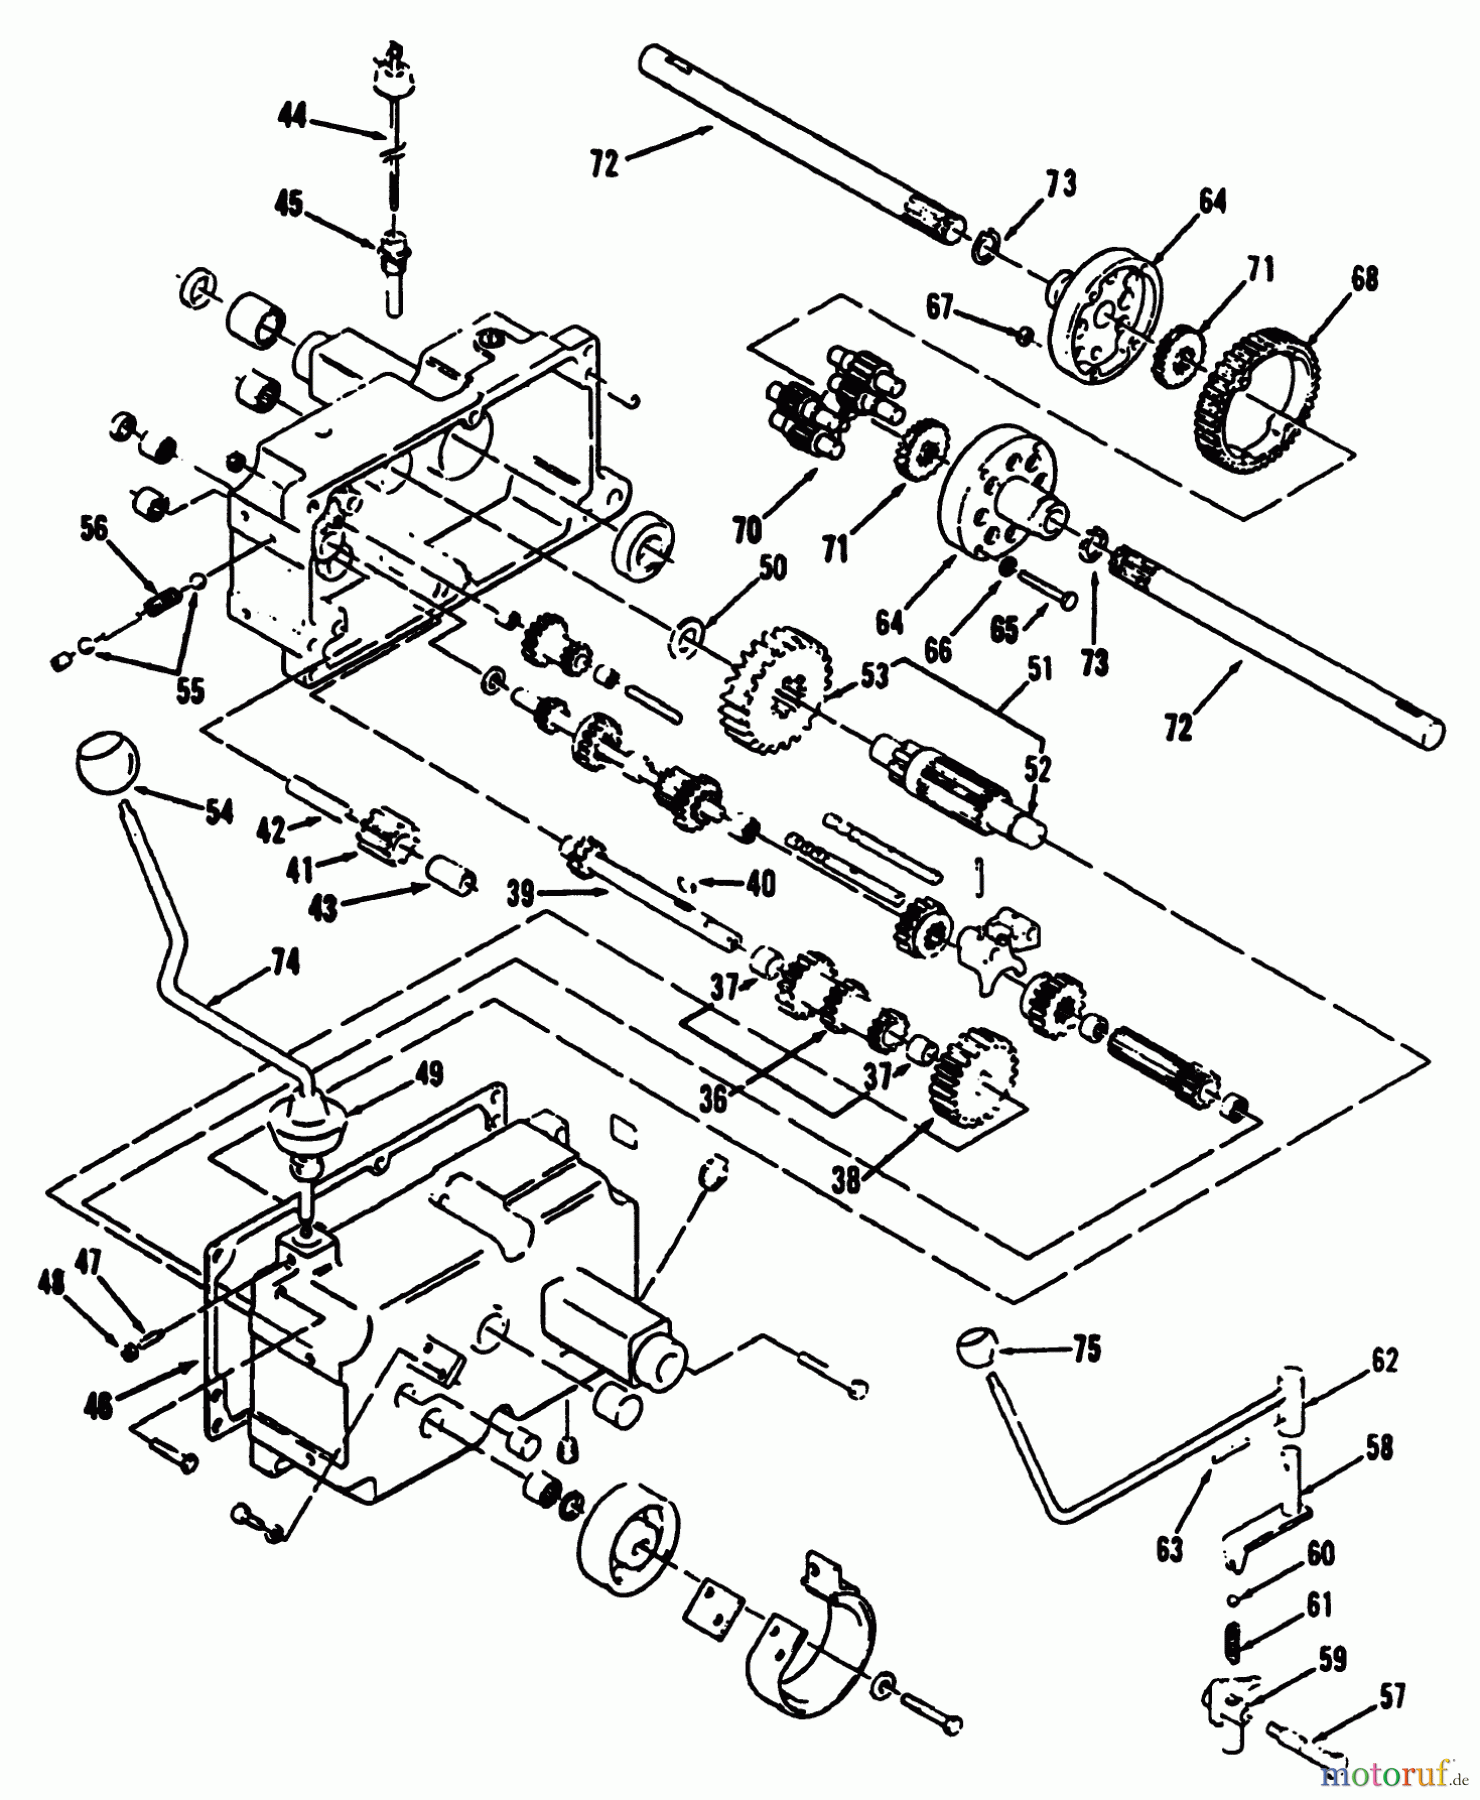  Toro Neu Mowers, Lawn & Garden Tractor Seite 2 R1-12K804 (312-8) - Toro 312-8 Garden Tractor, 1992 (2000001-2999999) MECHANICAL TRANSMISSION 8-SPEED #2